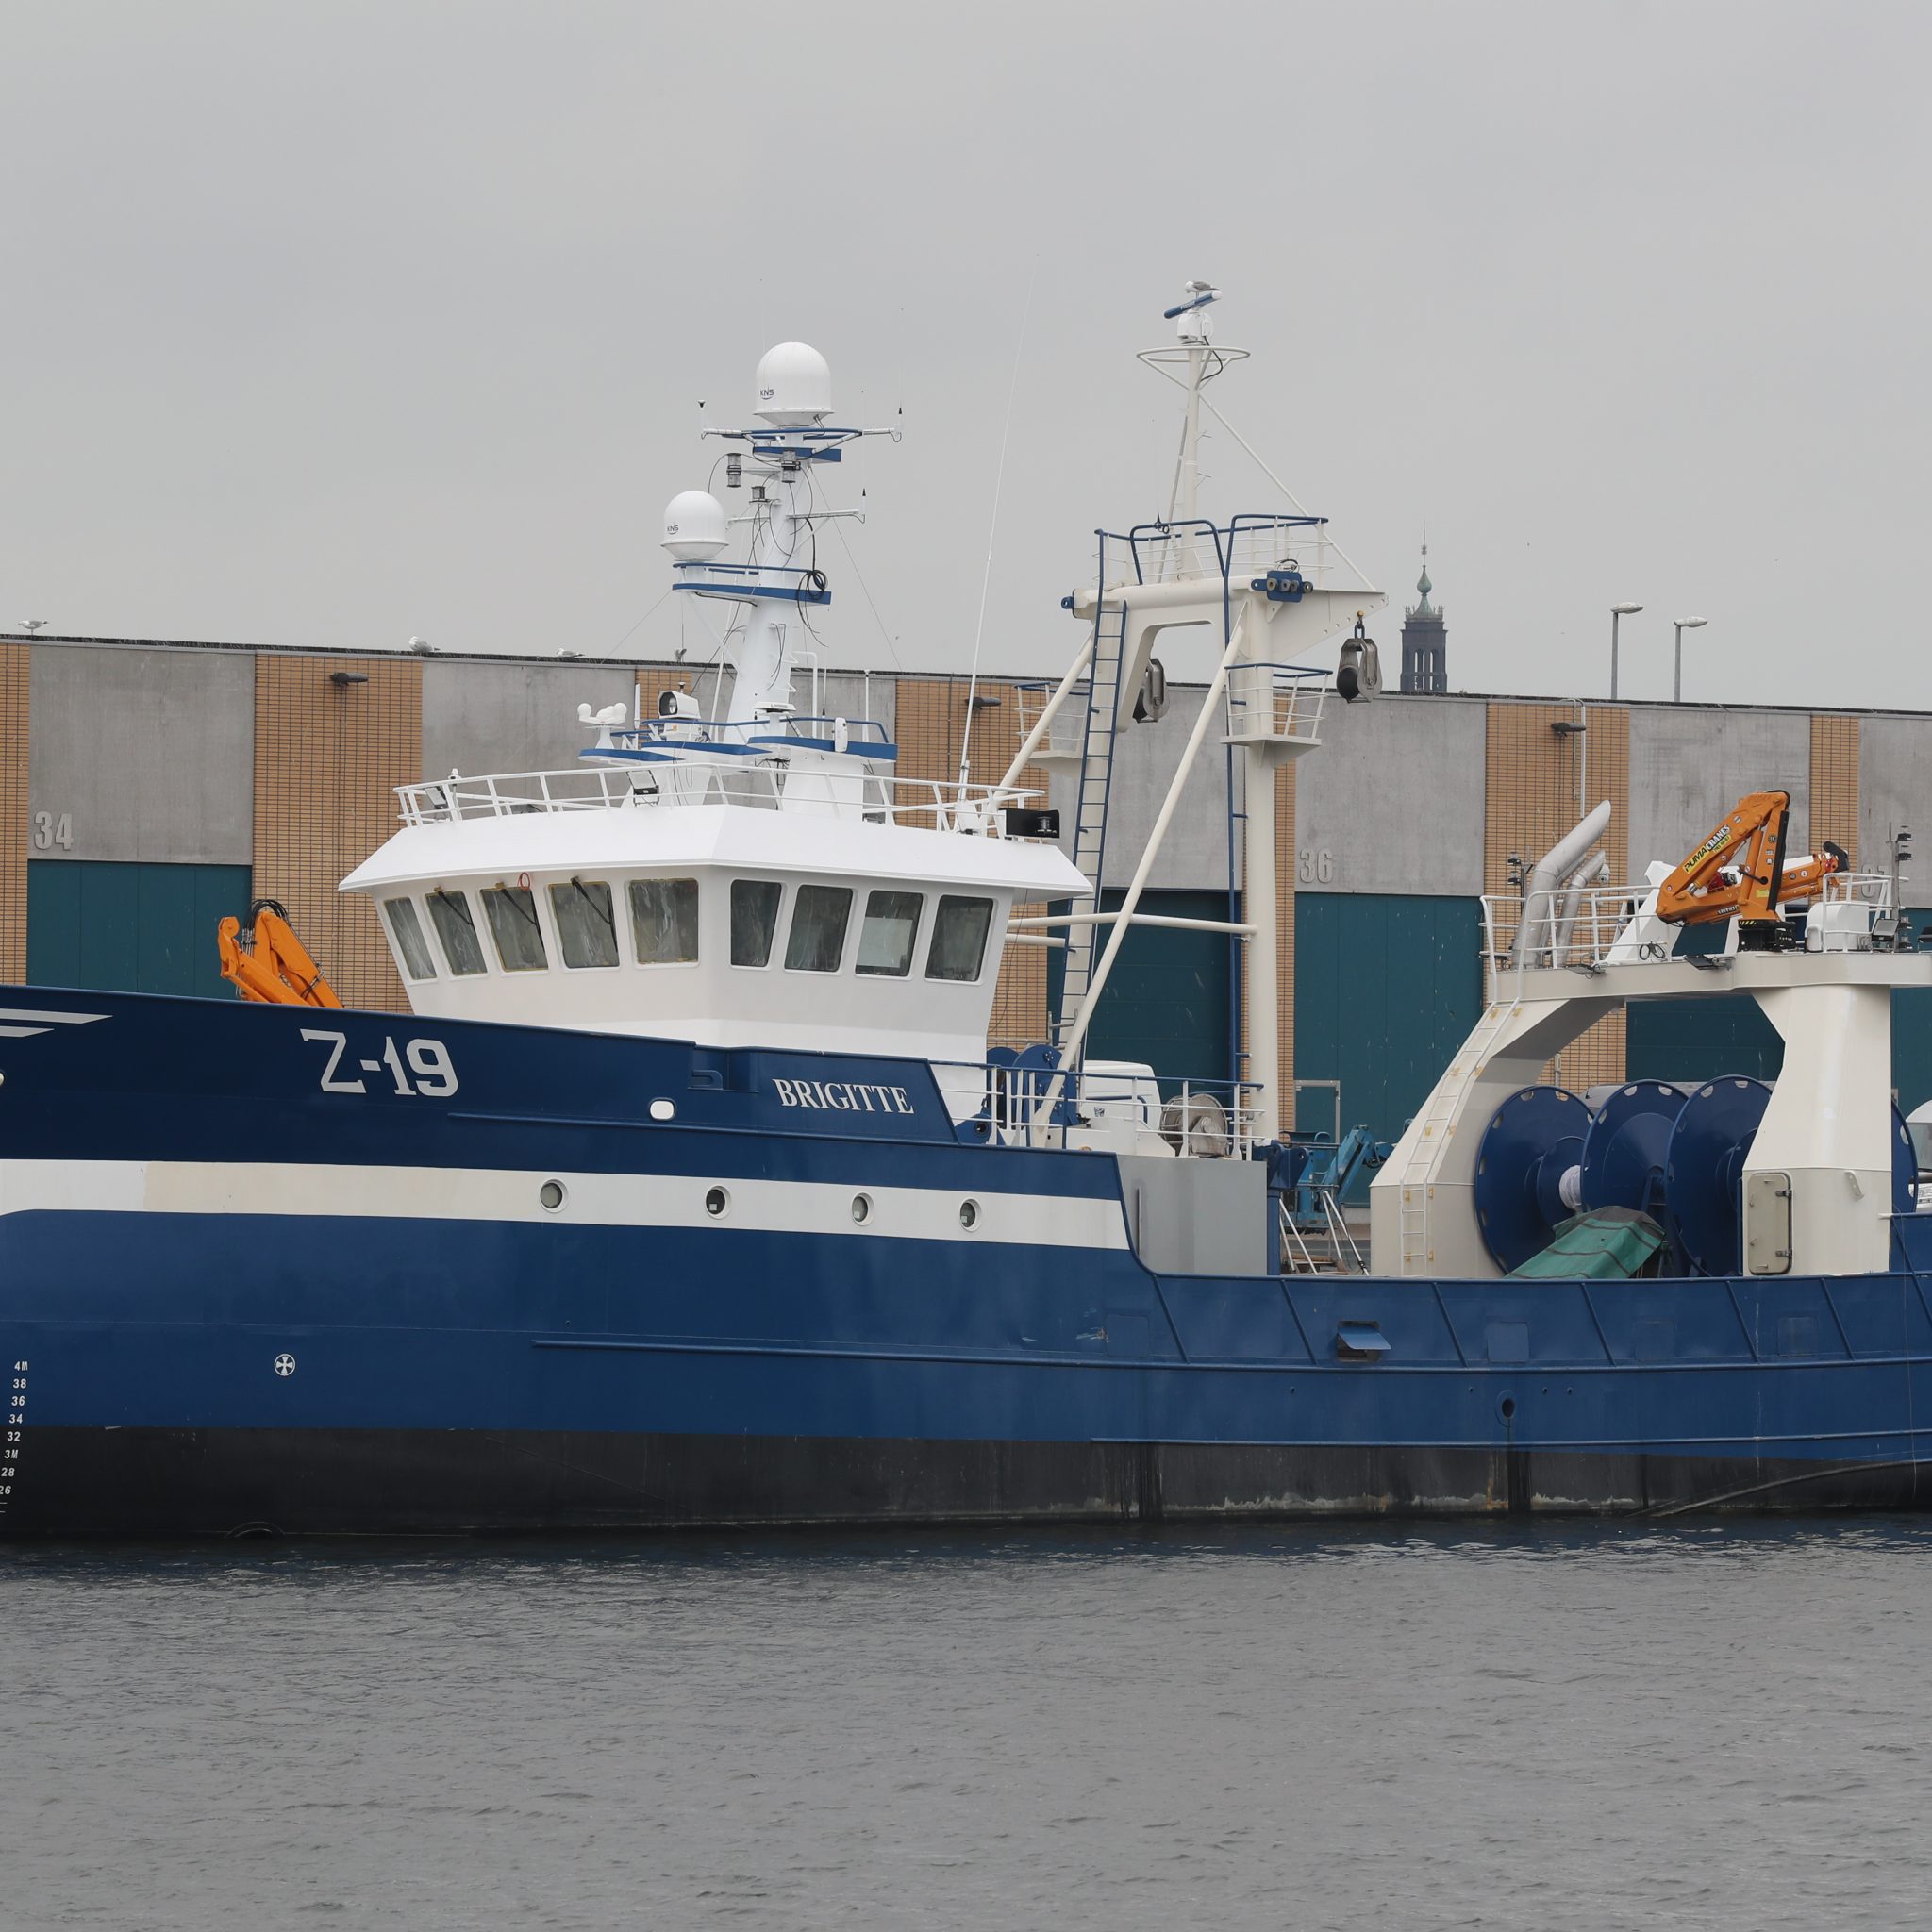 De Z-19 aan de afbouwkade in het visserijdok van Oostende. (Foto Bram Pronk)